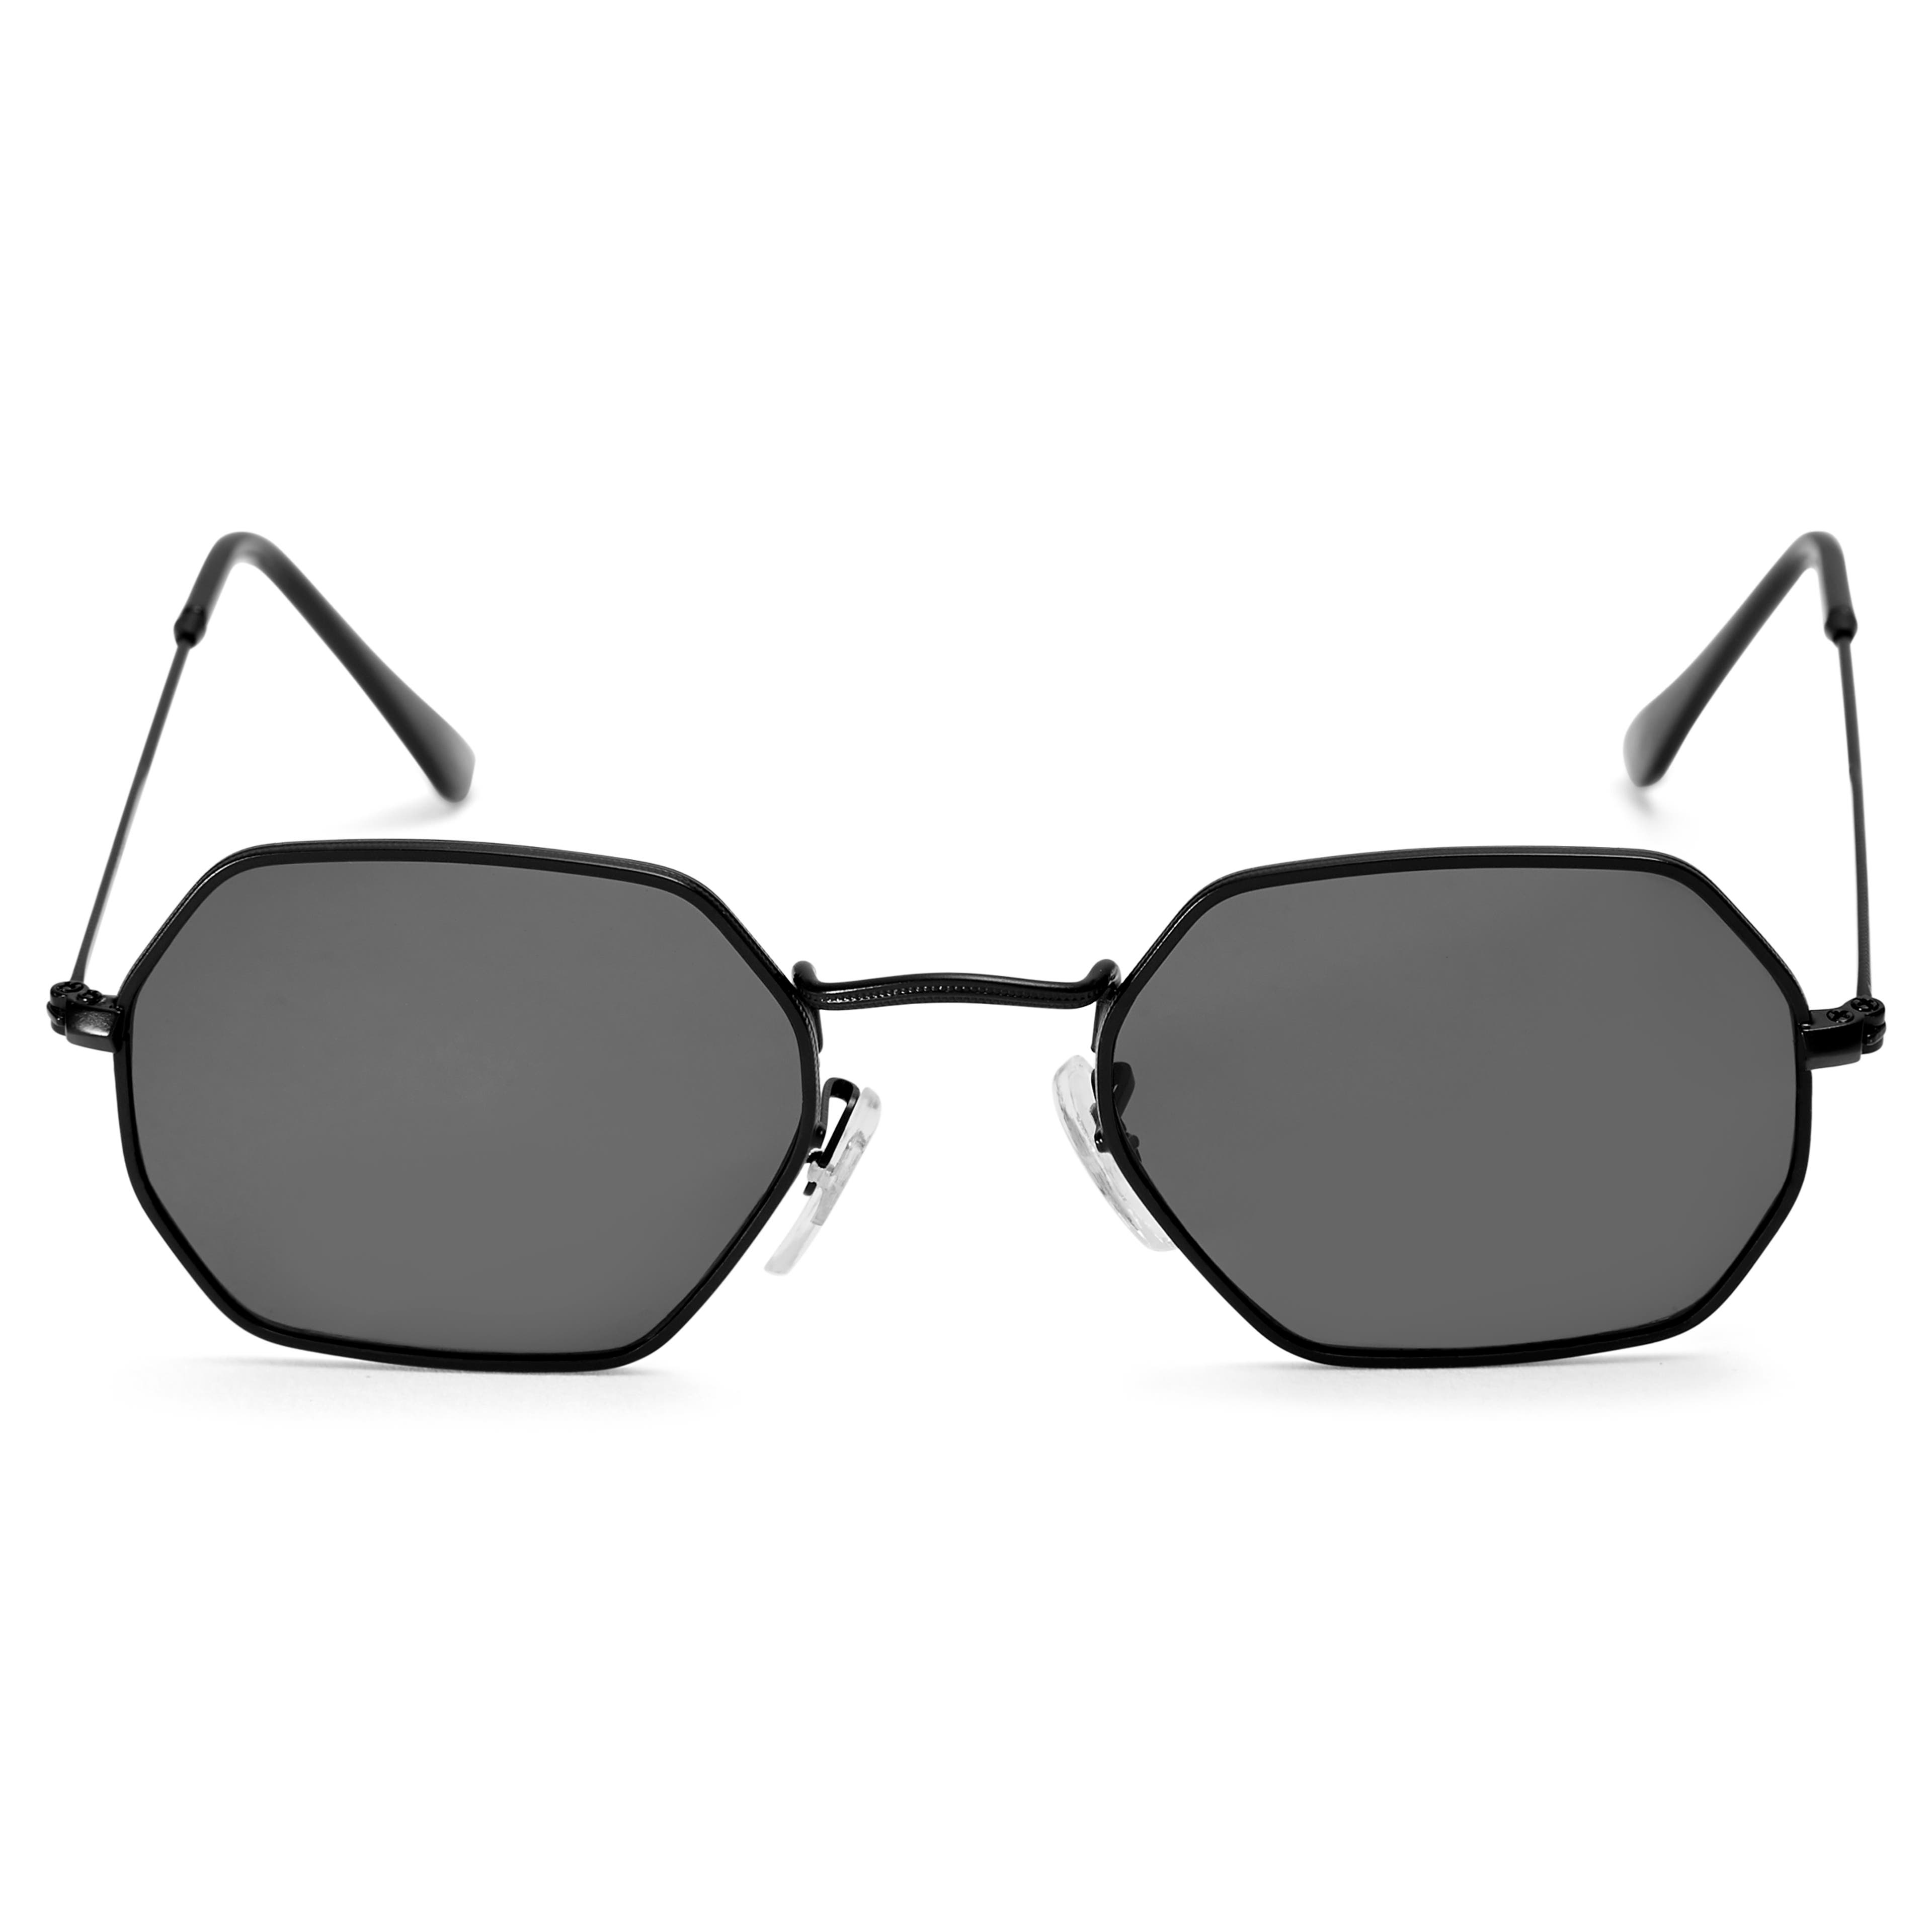 Modne czarno-czarne okulary przeciwsłoneczne